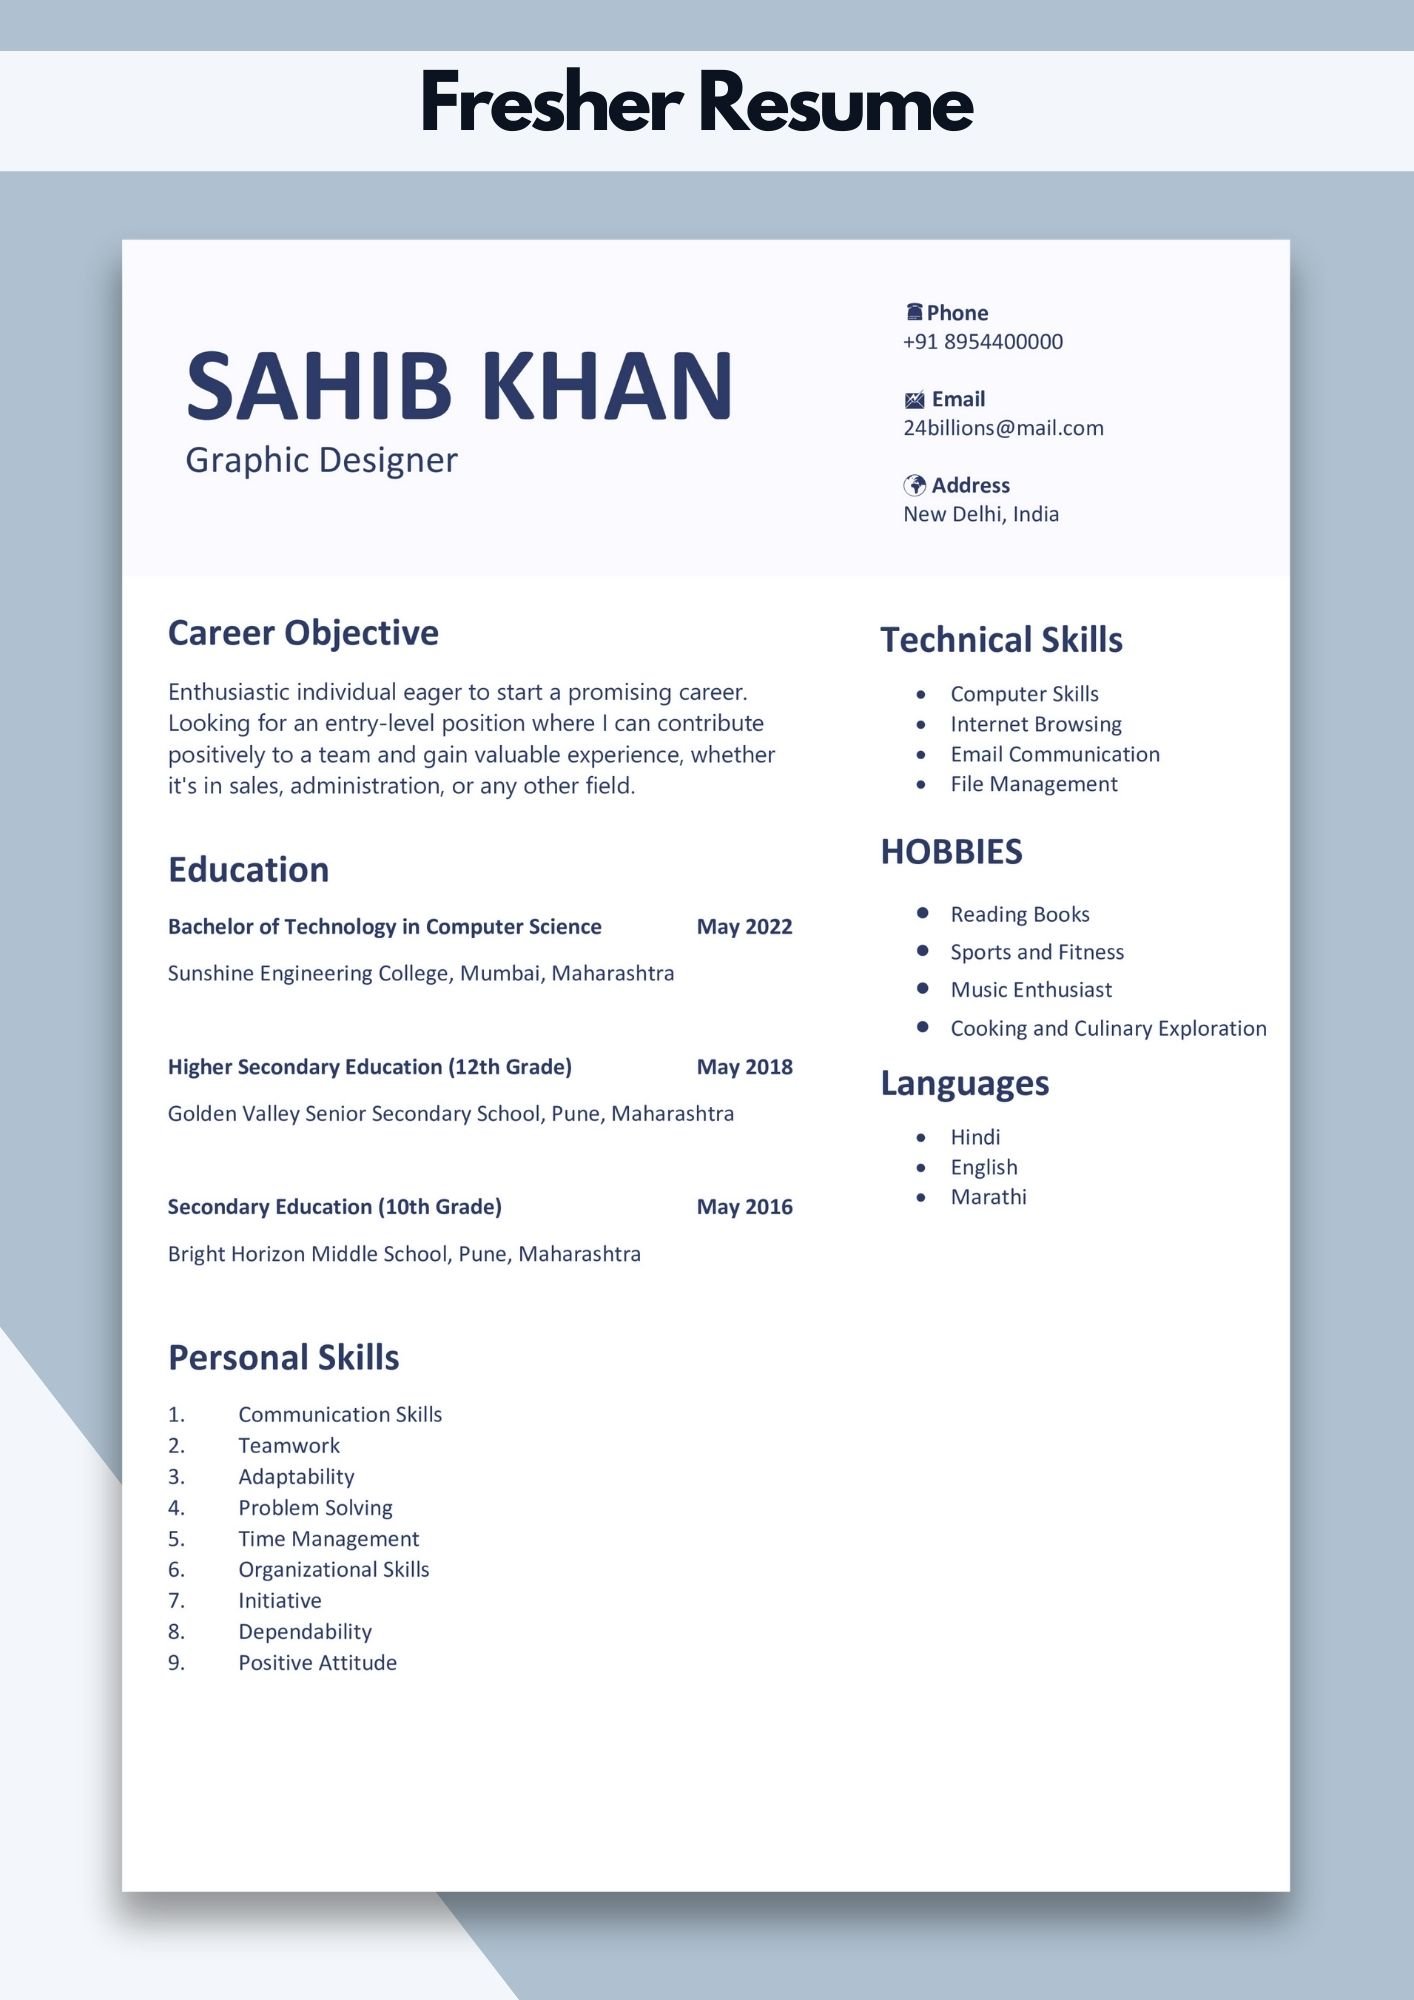 Sample Format of Resume for Fresher